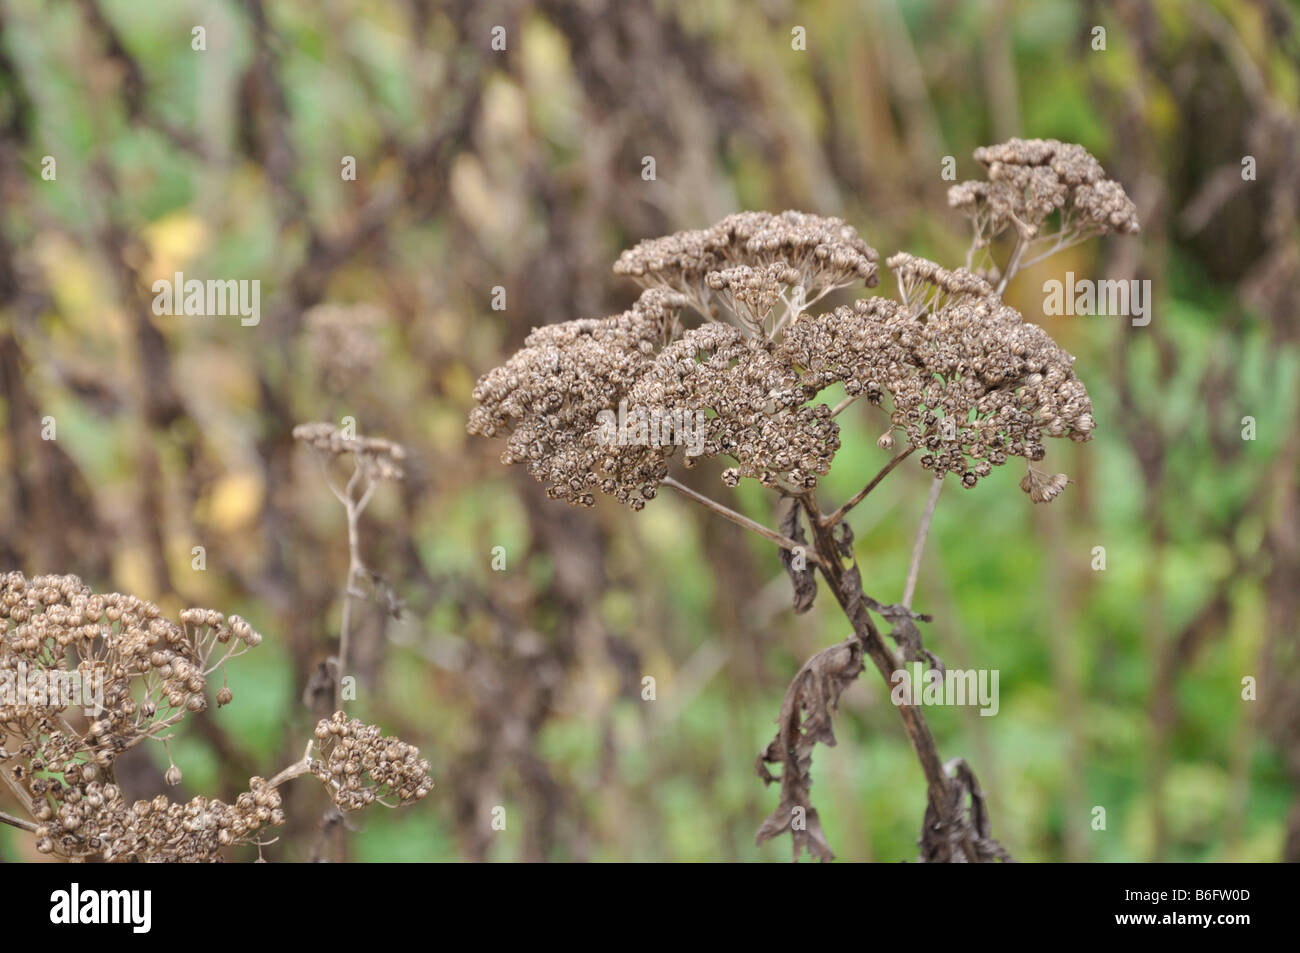 Rayed tansy (Tanacetum macrophyllum) Stock Photo